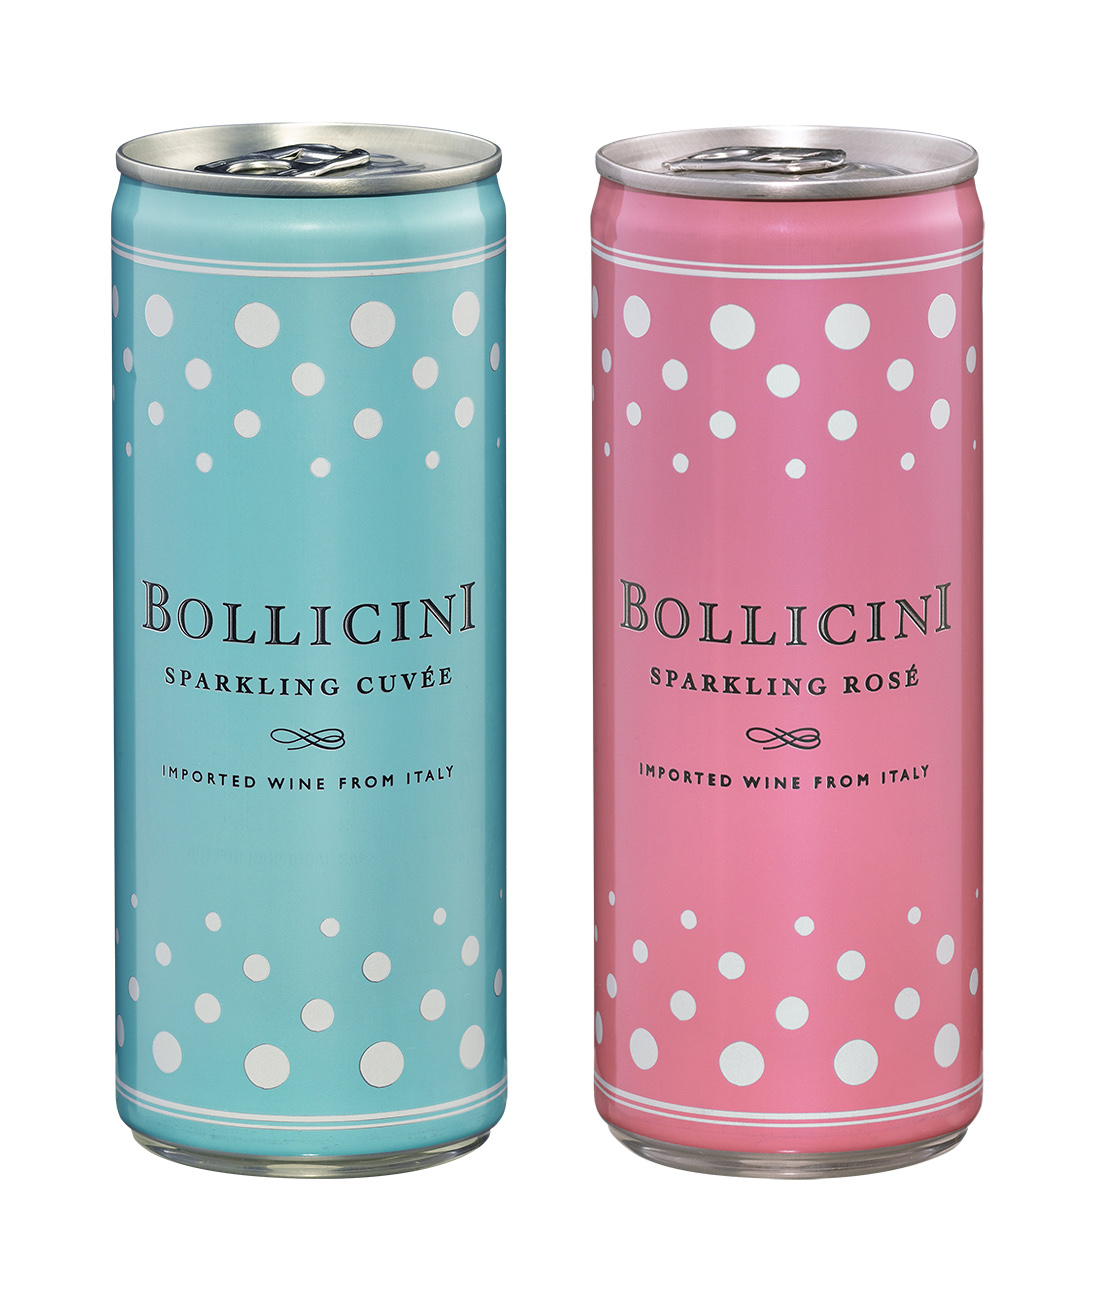 缶入りスパークリングワイン「ボッリチーニ」新発売 2021年1月20日 ニュースリリース サントリー